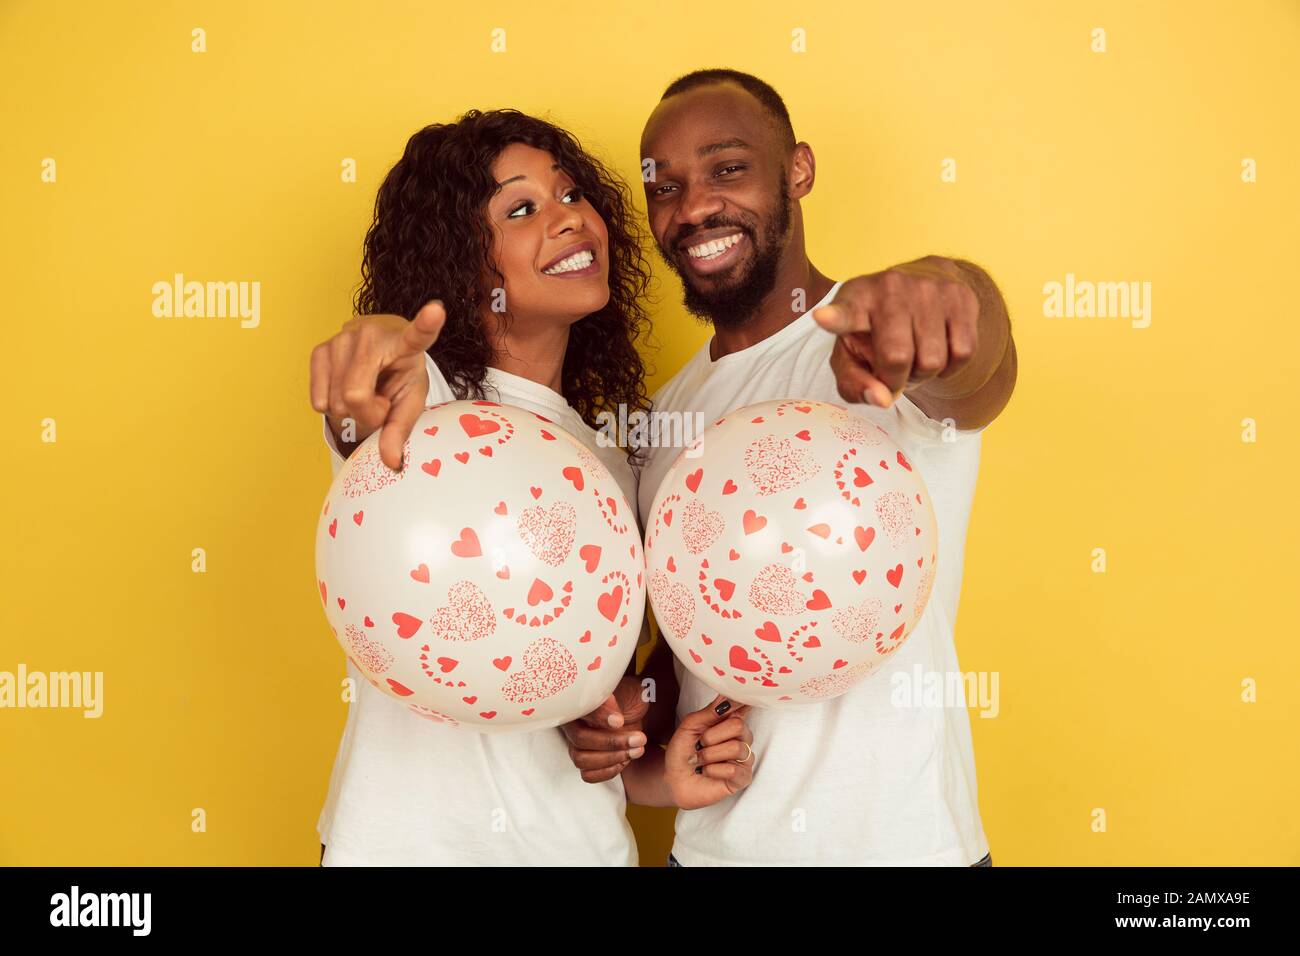 Zeigen mit Luftballons. Valentinstag gefeiert, glückliches afro-amerikanisches Paar isoliert auf gelbem Hintergrund. Konzept menschlicher Emotionen, Gesichtsausdruck, Liebe, Beziehungen, romantische Feiertage. Stockfoto